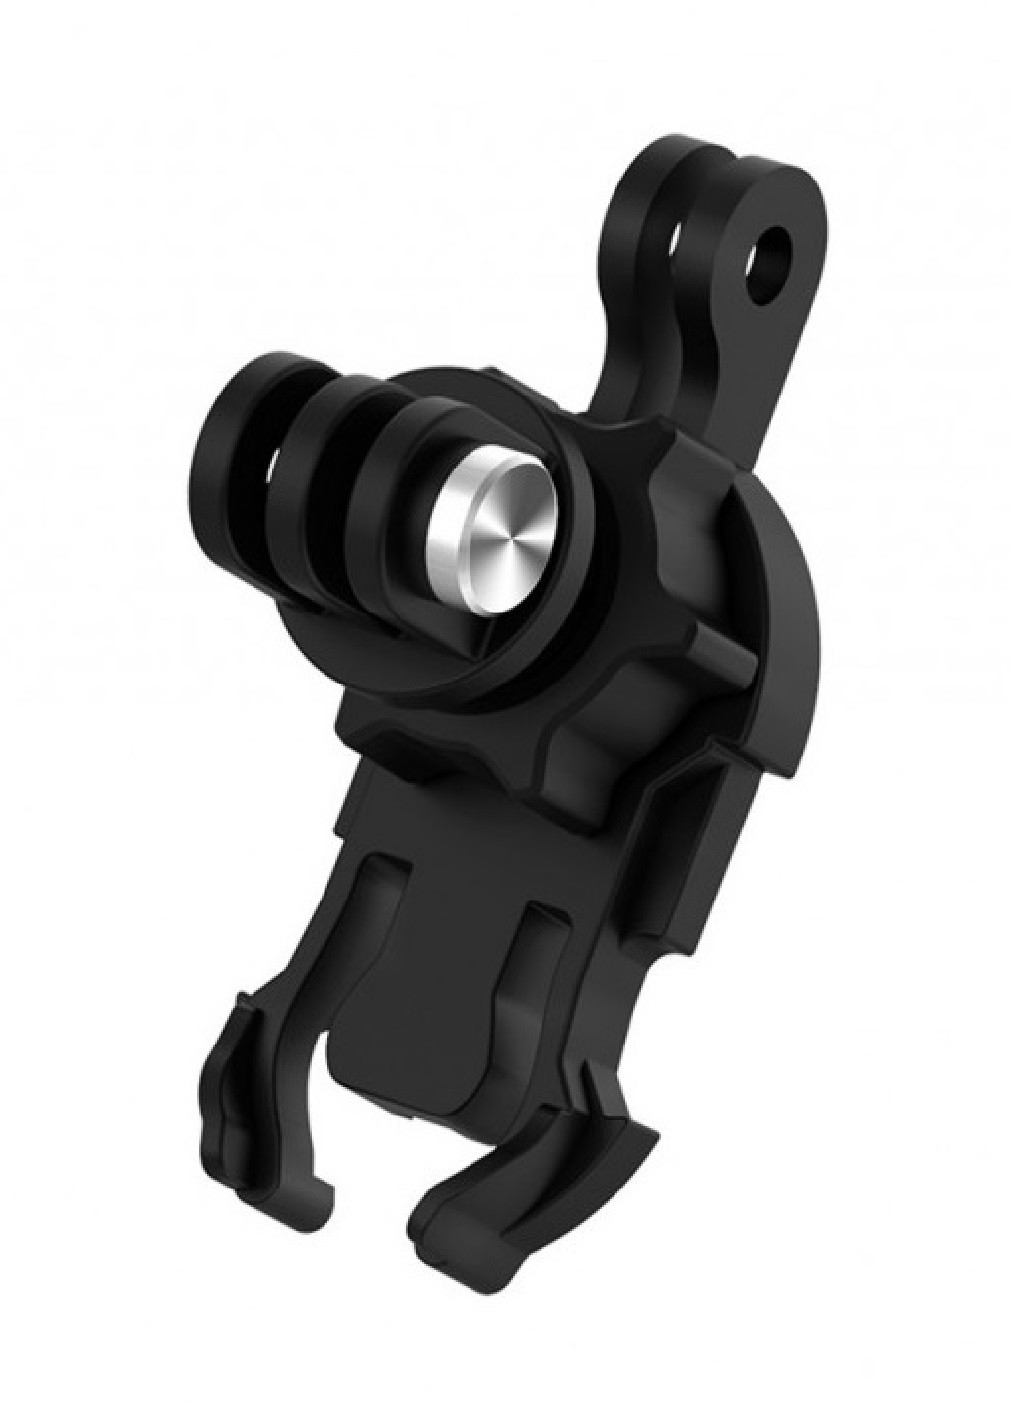 Адаптер держатель крепление Telesin J-Hook 360° универсальный для экшн камер GoPro, DJI Osmo Action, Xiaomi, SJCAM (474843-Prob) Unbranded (260006540)